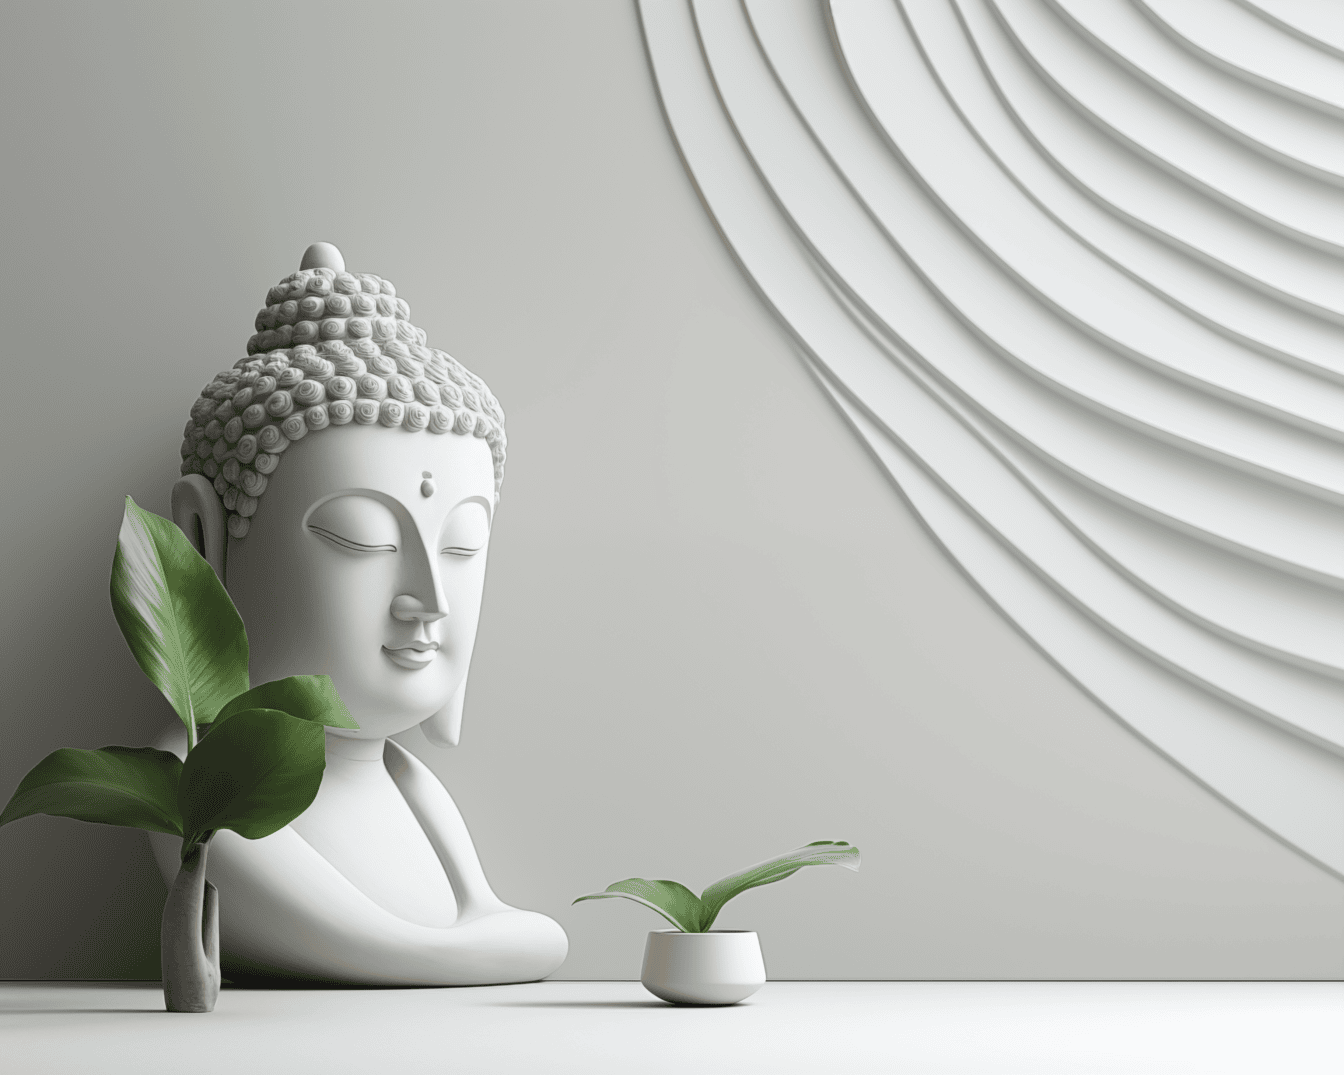 Minimalistický dizajn interiéru s bielou figúrkou Budhu vedľa vázy as modernou výzdobou na bielej stene